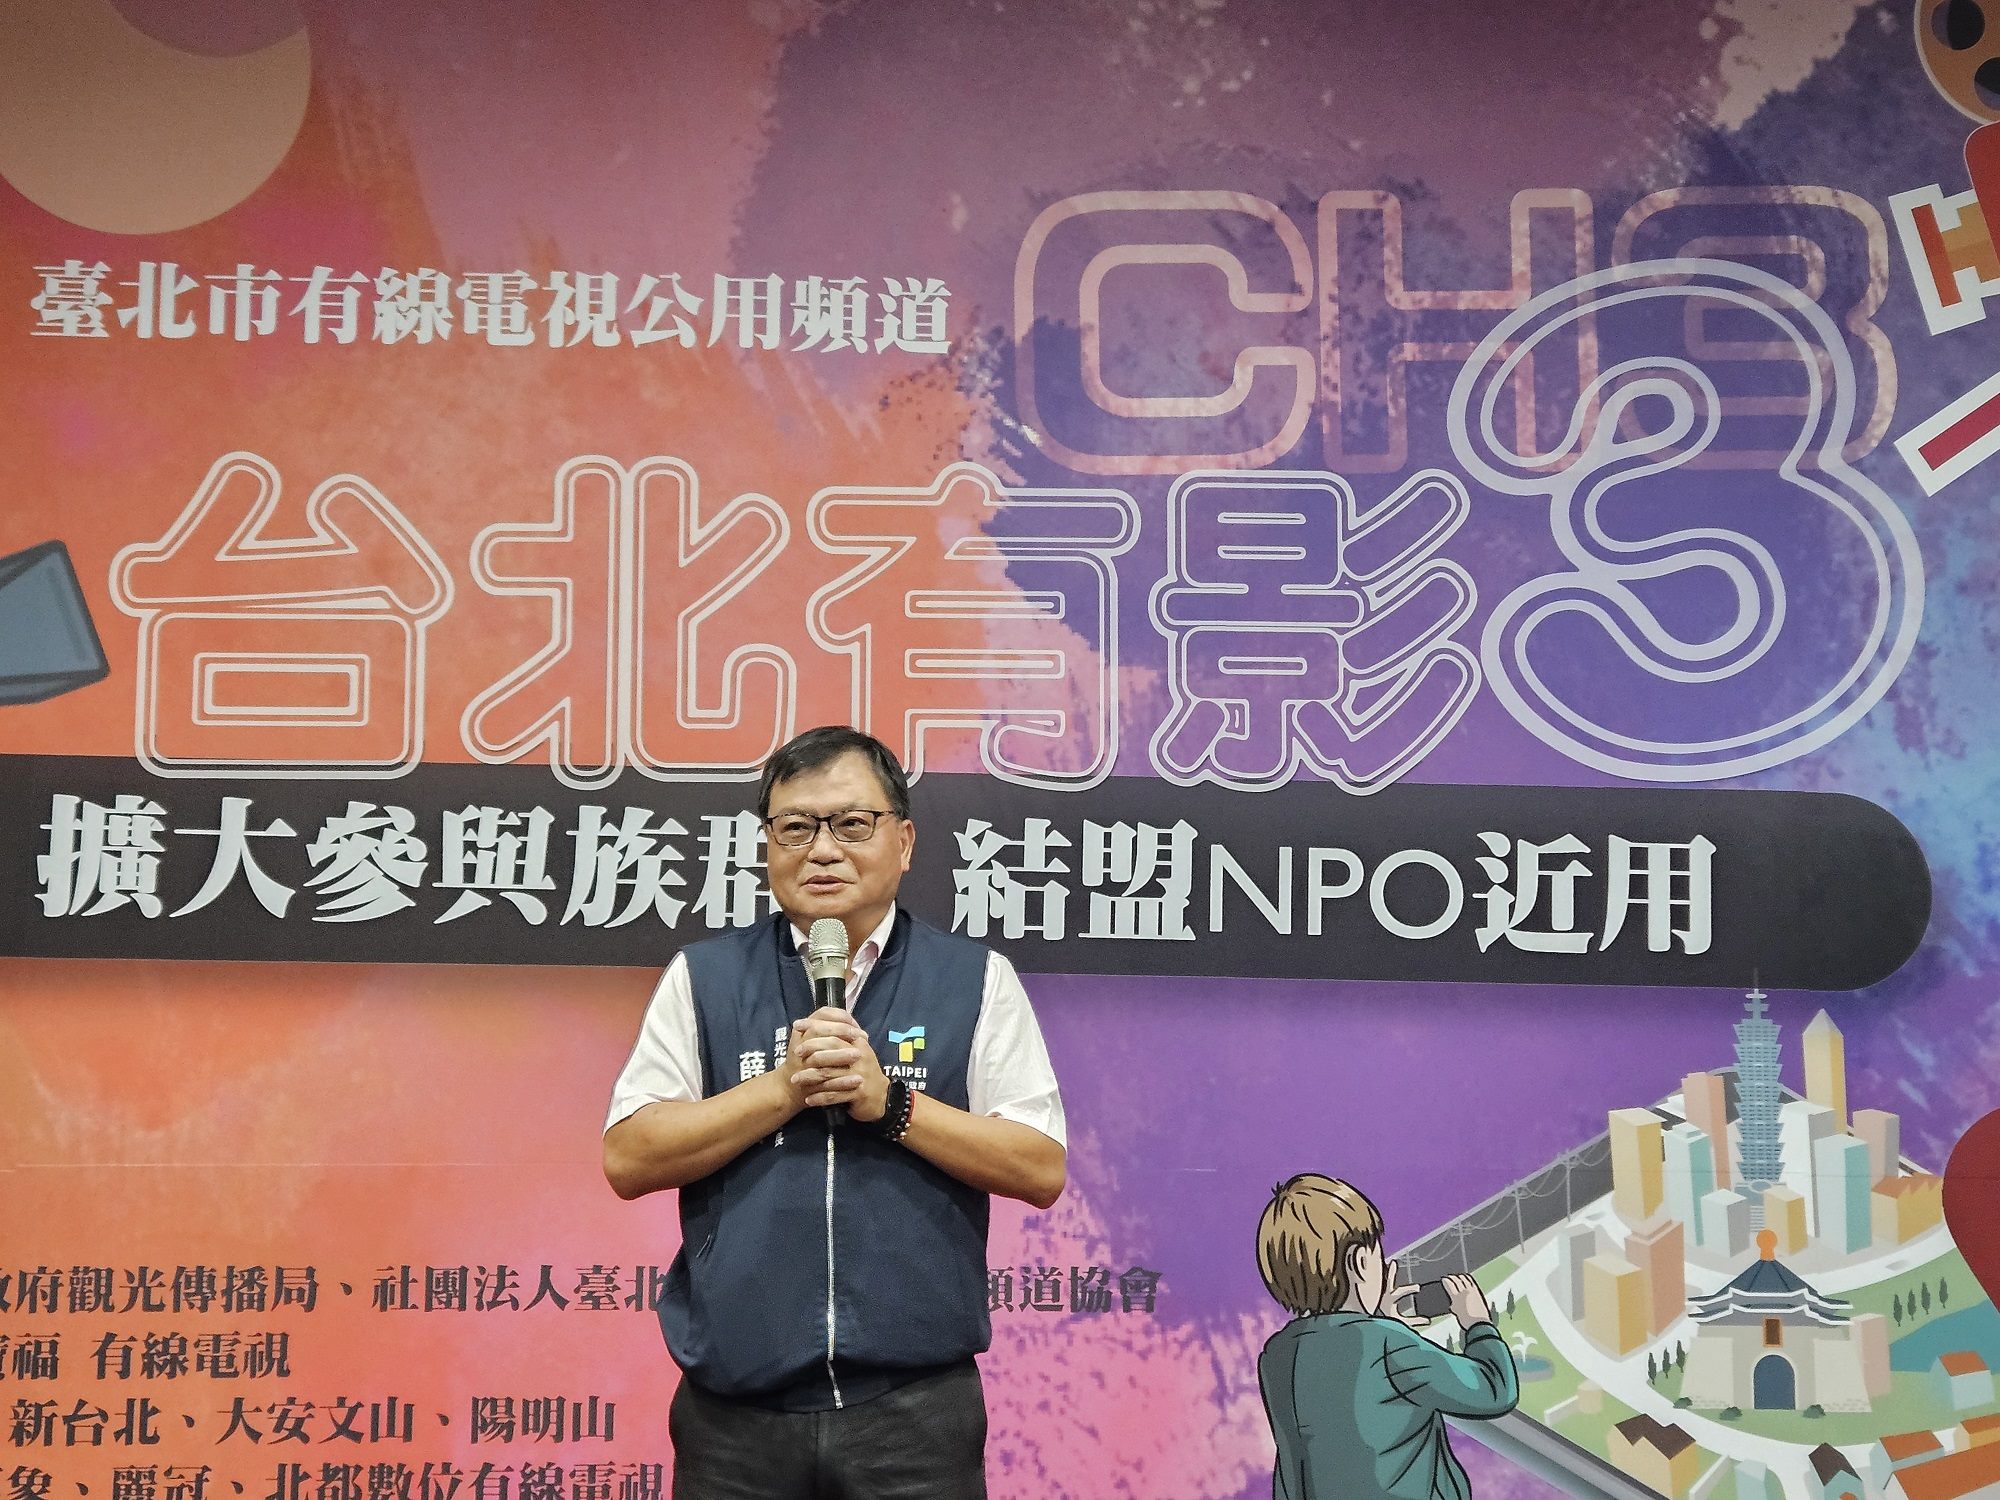 觀傳局副局長薛秋火期許臺北市公用頻道CH3扮演重要的市民資訊平台，為在地發聲。